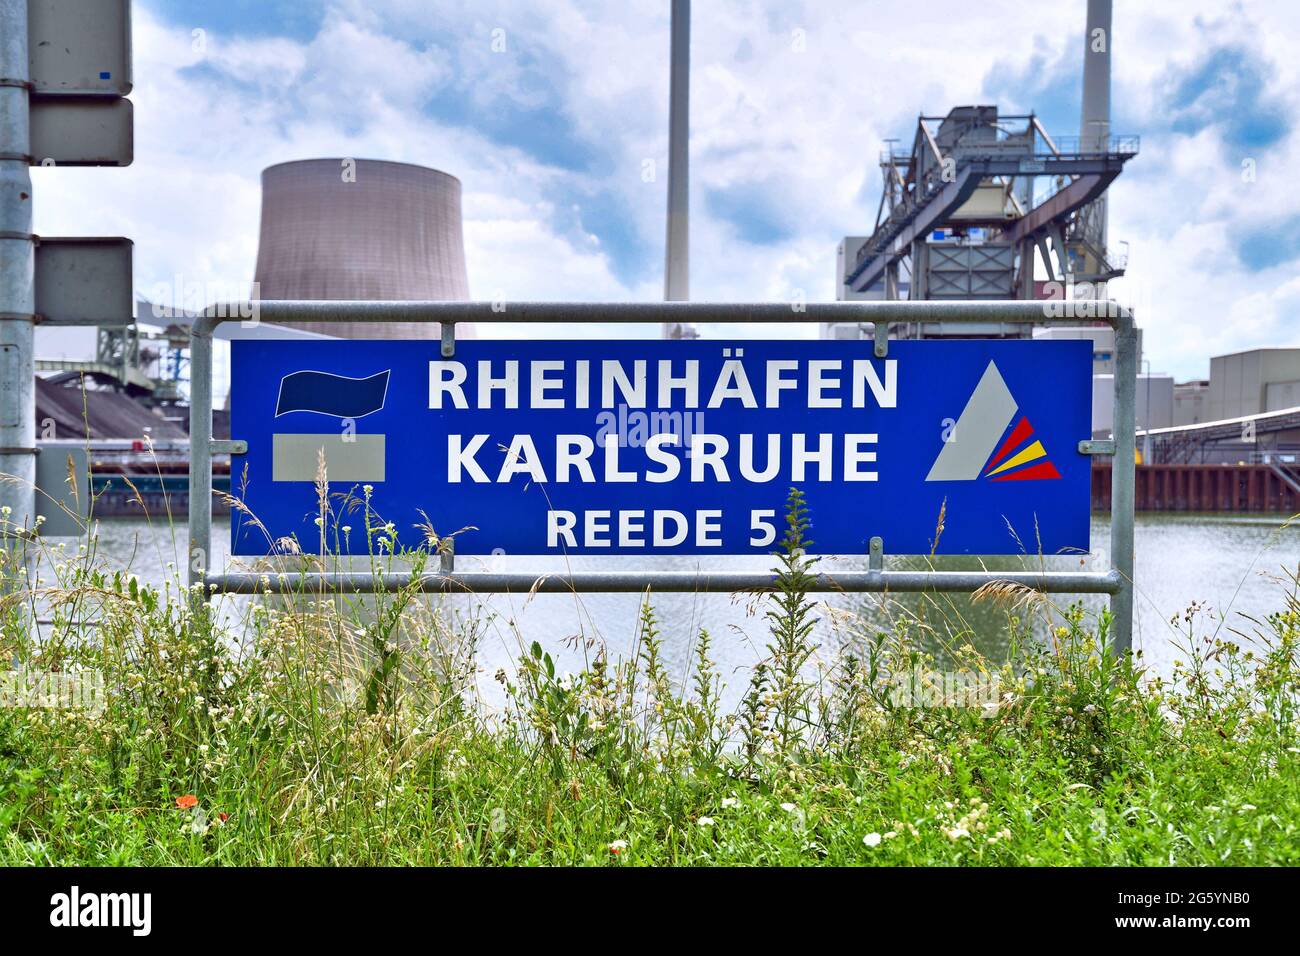 Karlsruhe Germany - Sign at industrial Rhine river harbor roadstead no. 5 saying 'Rheinhäfen Karlsruhe Reede 5' Stock Photo